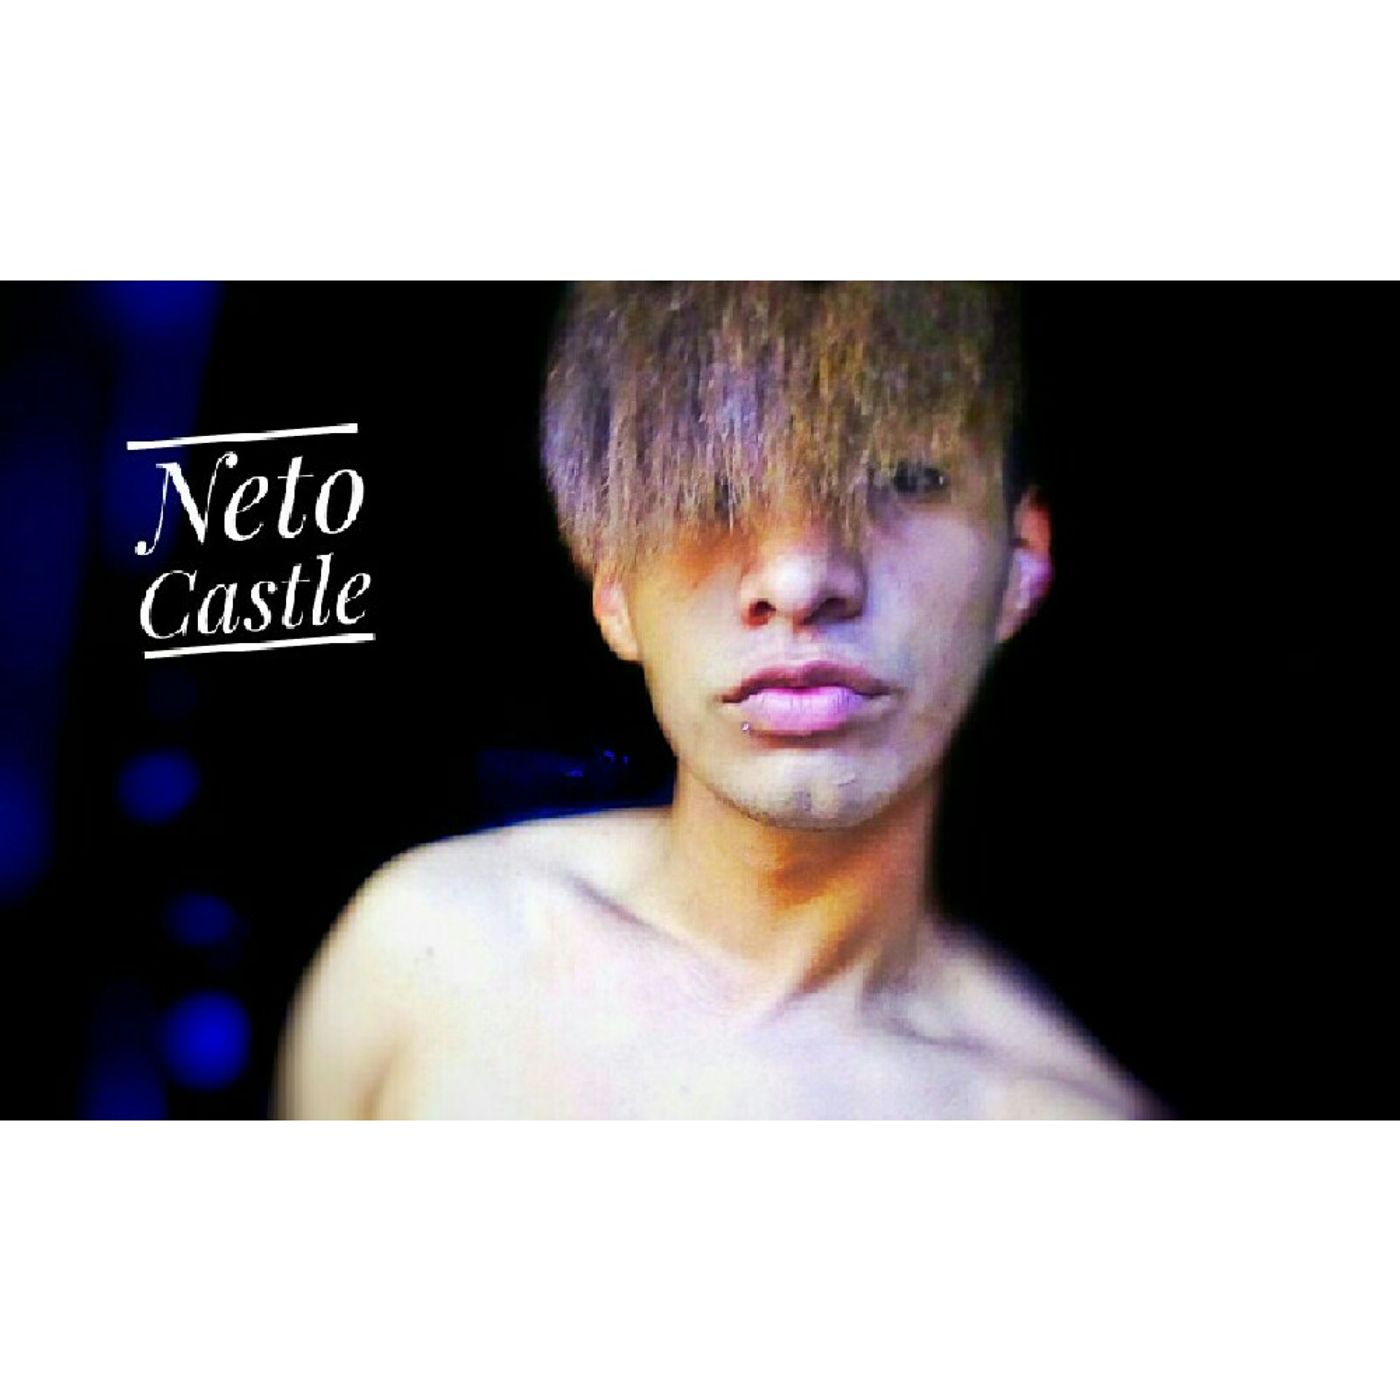 Neto Castle's show